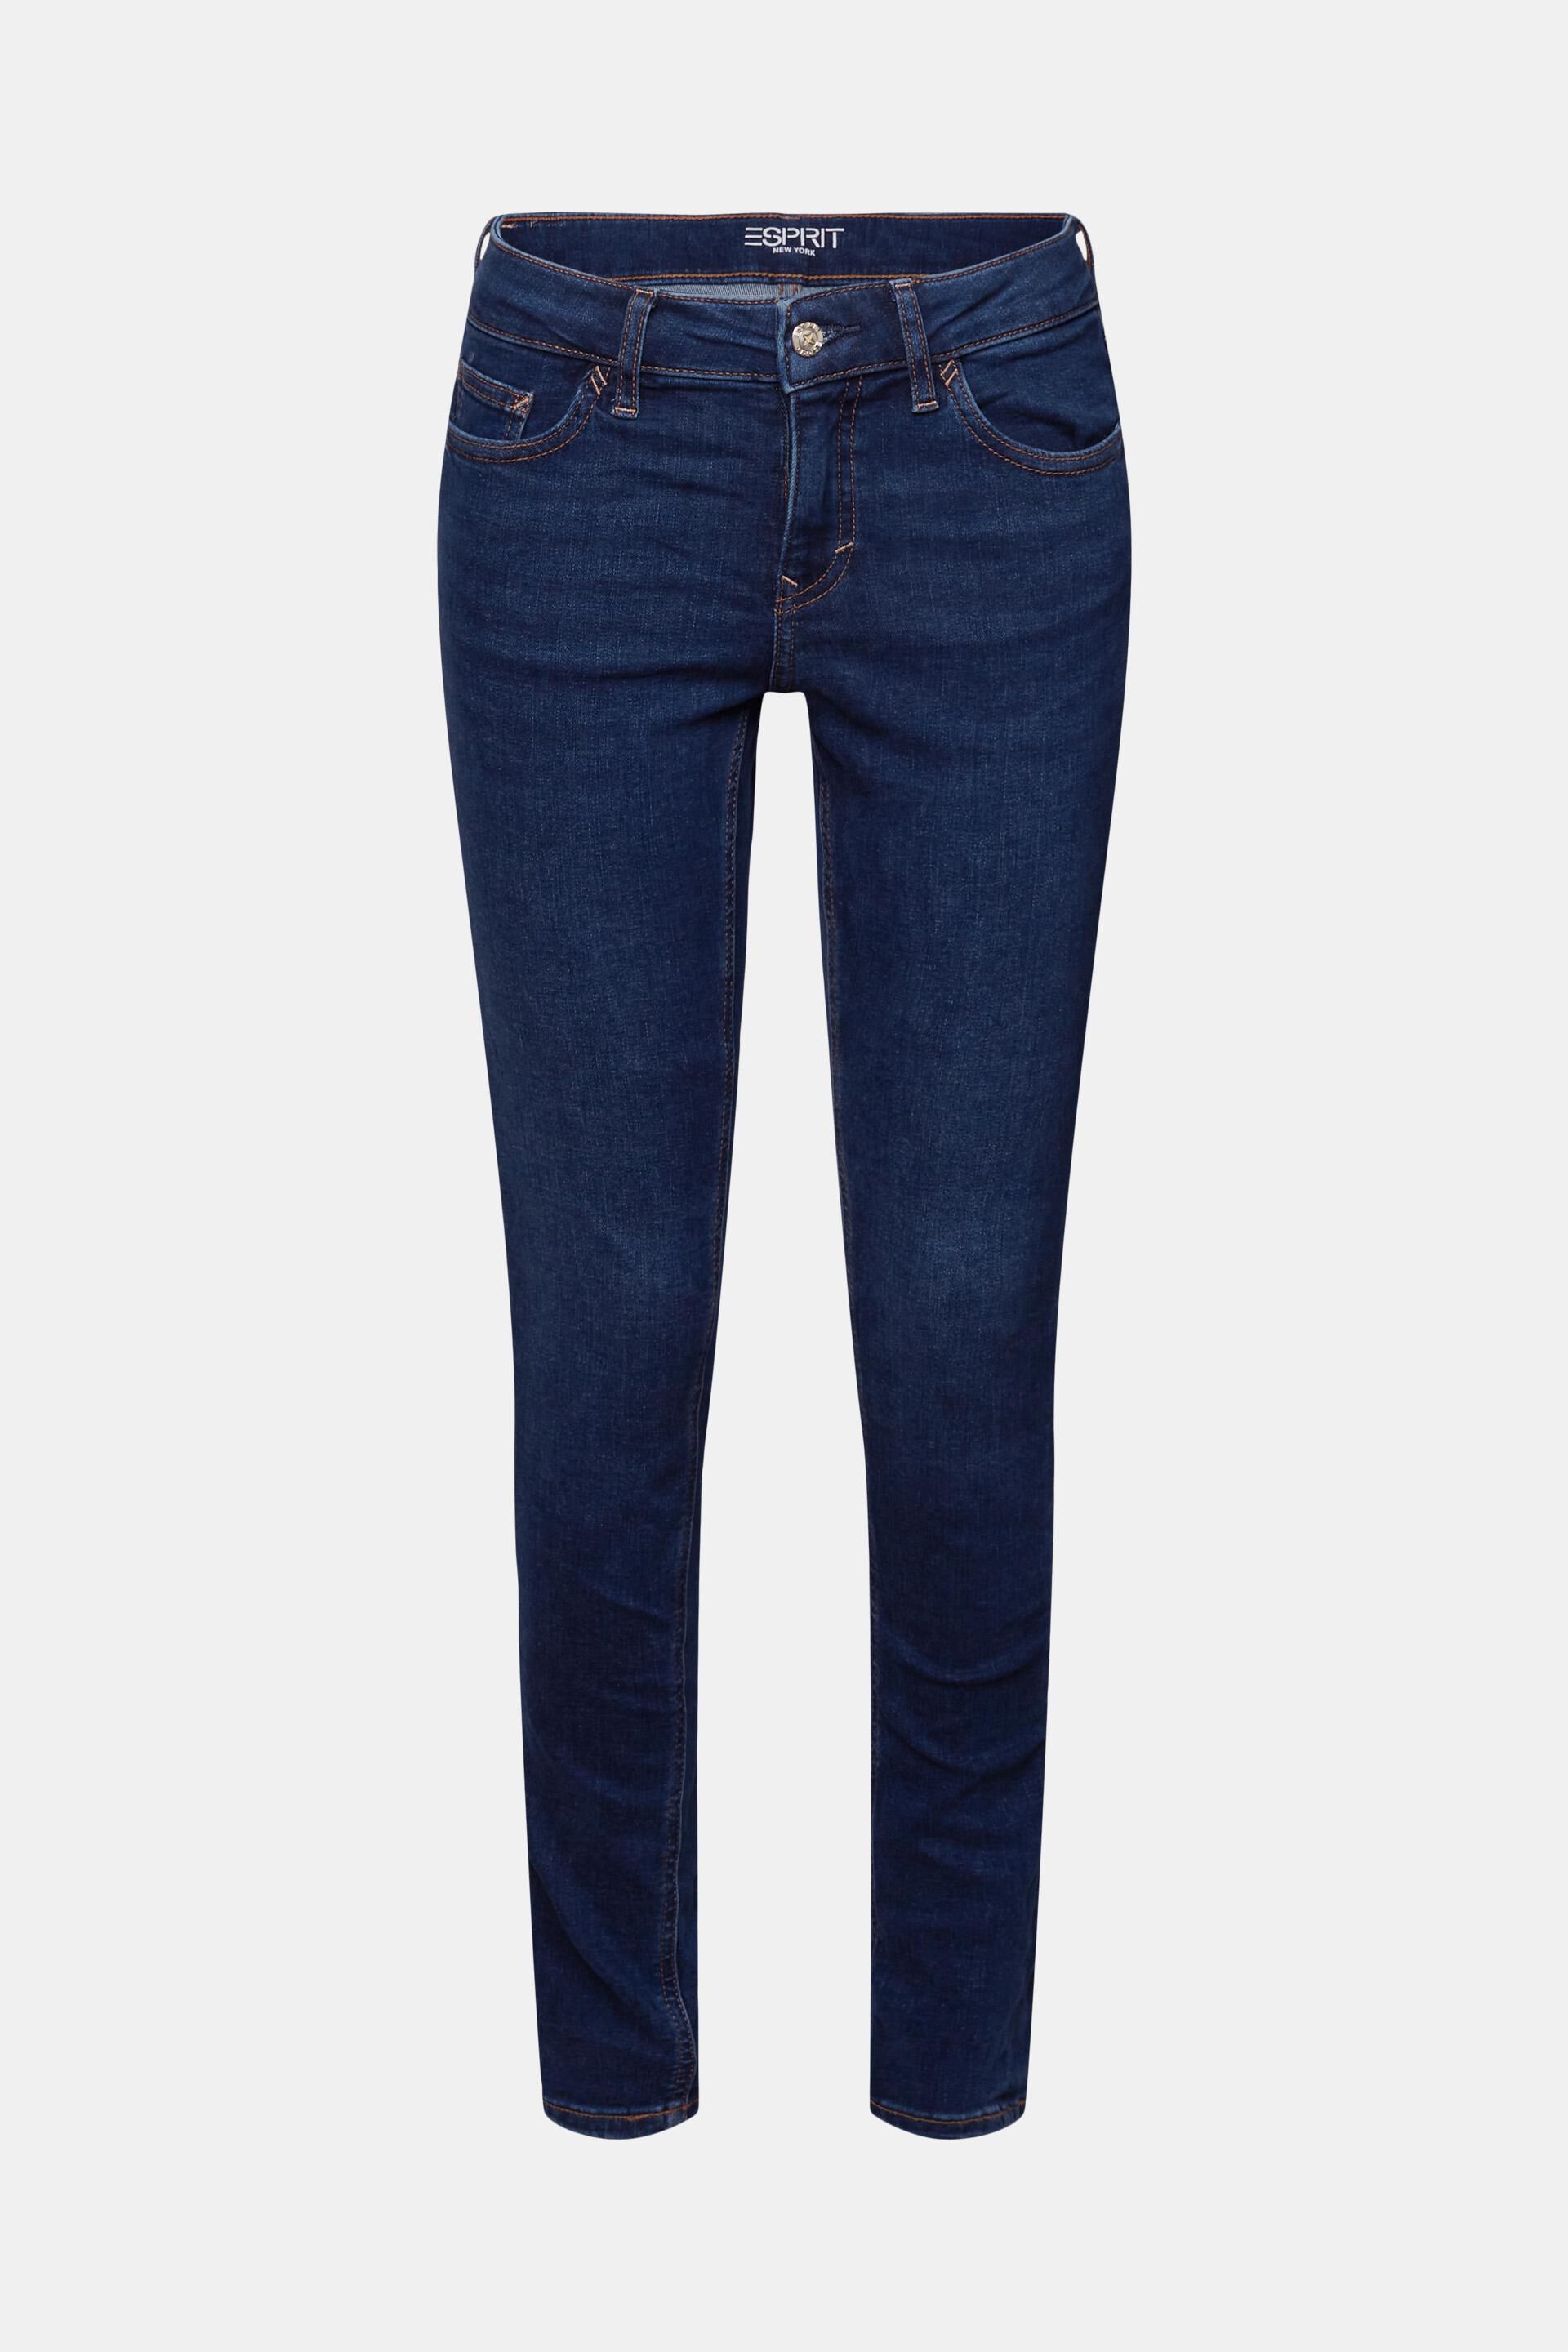 Esprit Damen Skinny-Jeans mit Bund mittelhohem